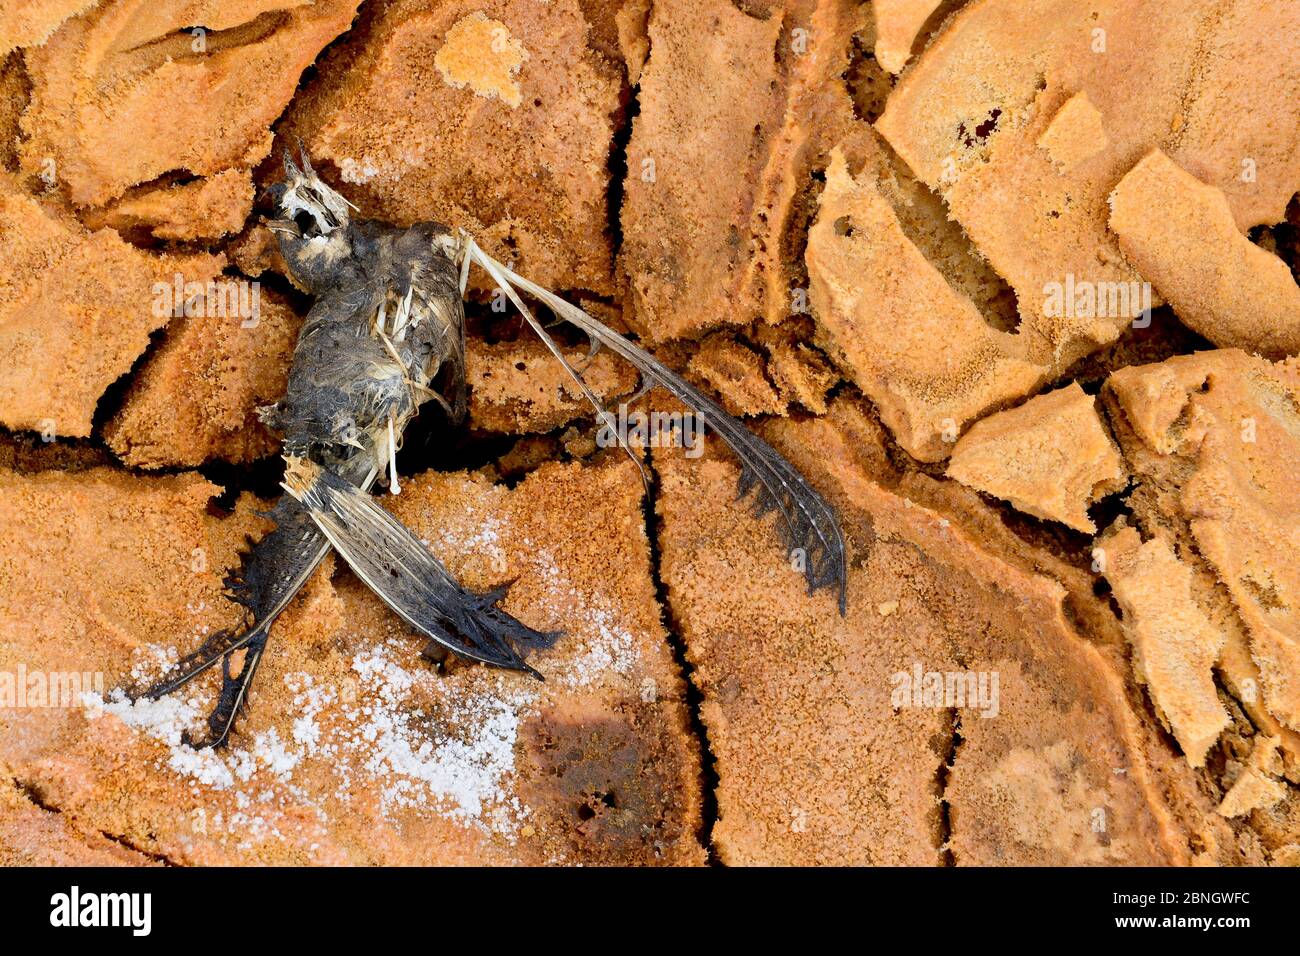 Petit oiseau mort par empoisonnement au soufre, région de Dallol, lac Assale, région d'Afar, Éthiopie, Afrique. Novembre 2014. Banque D'Images